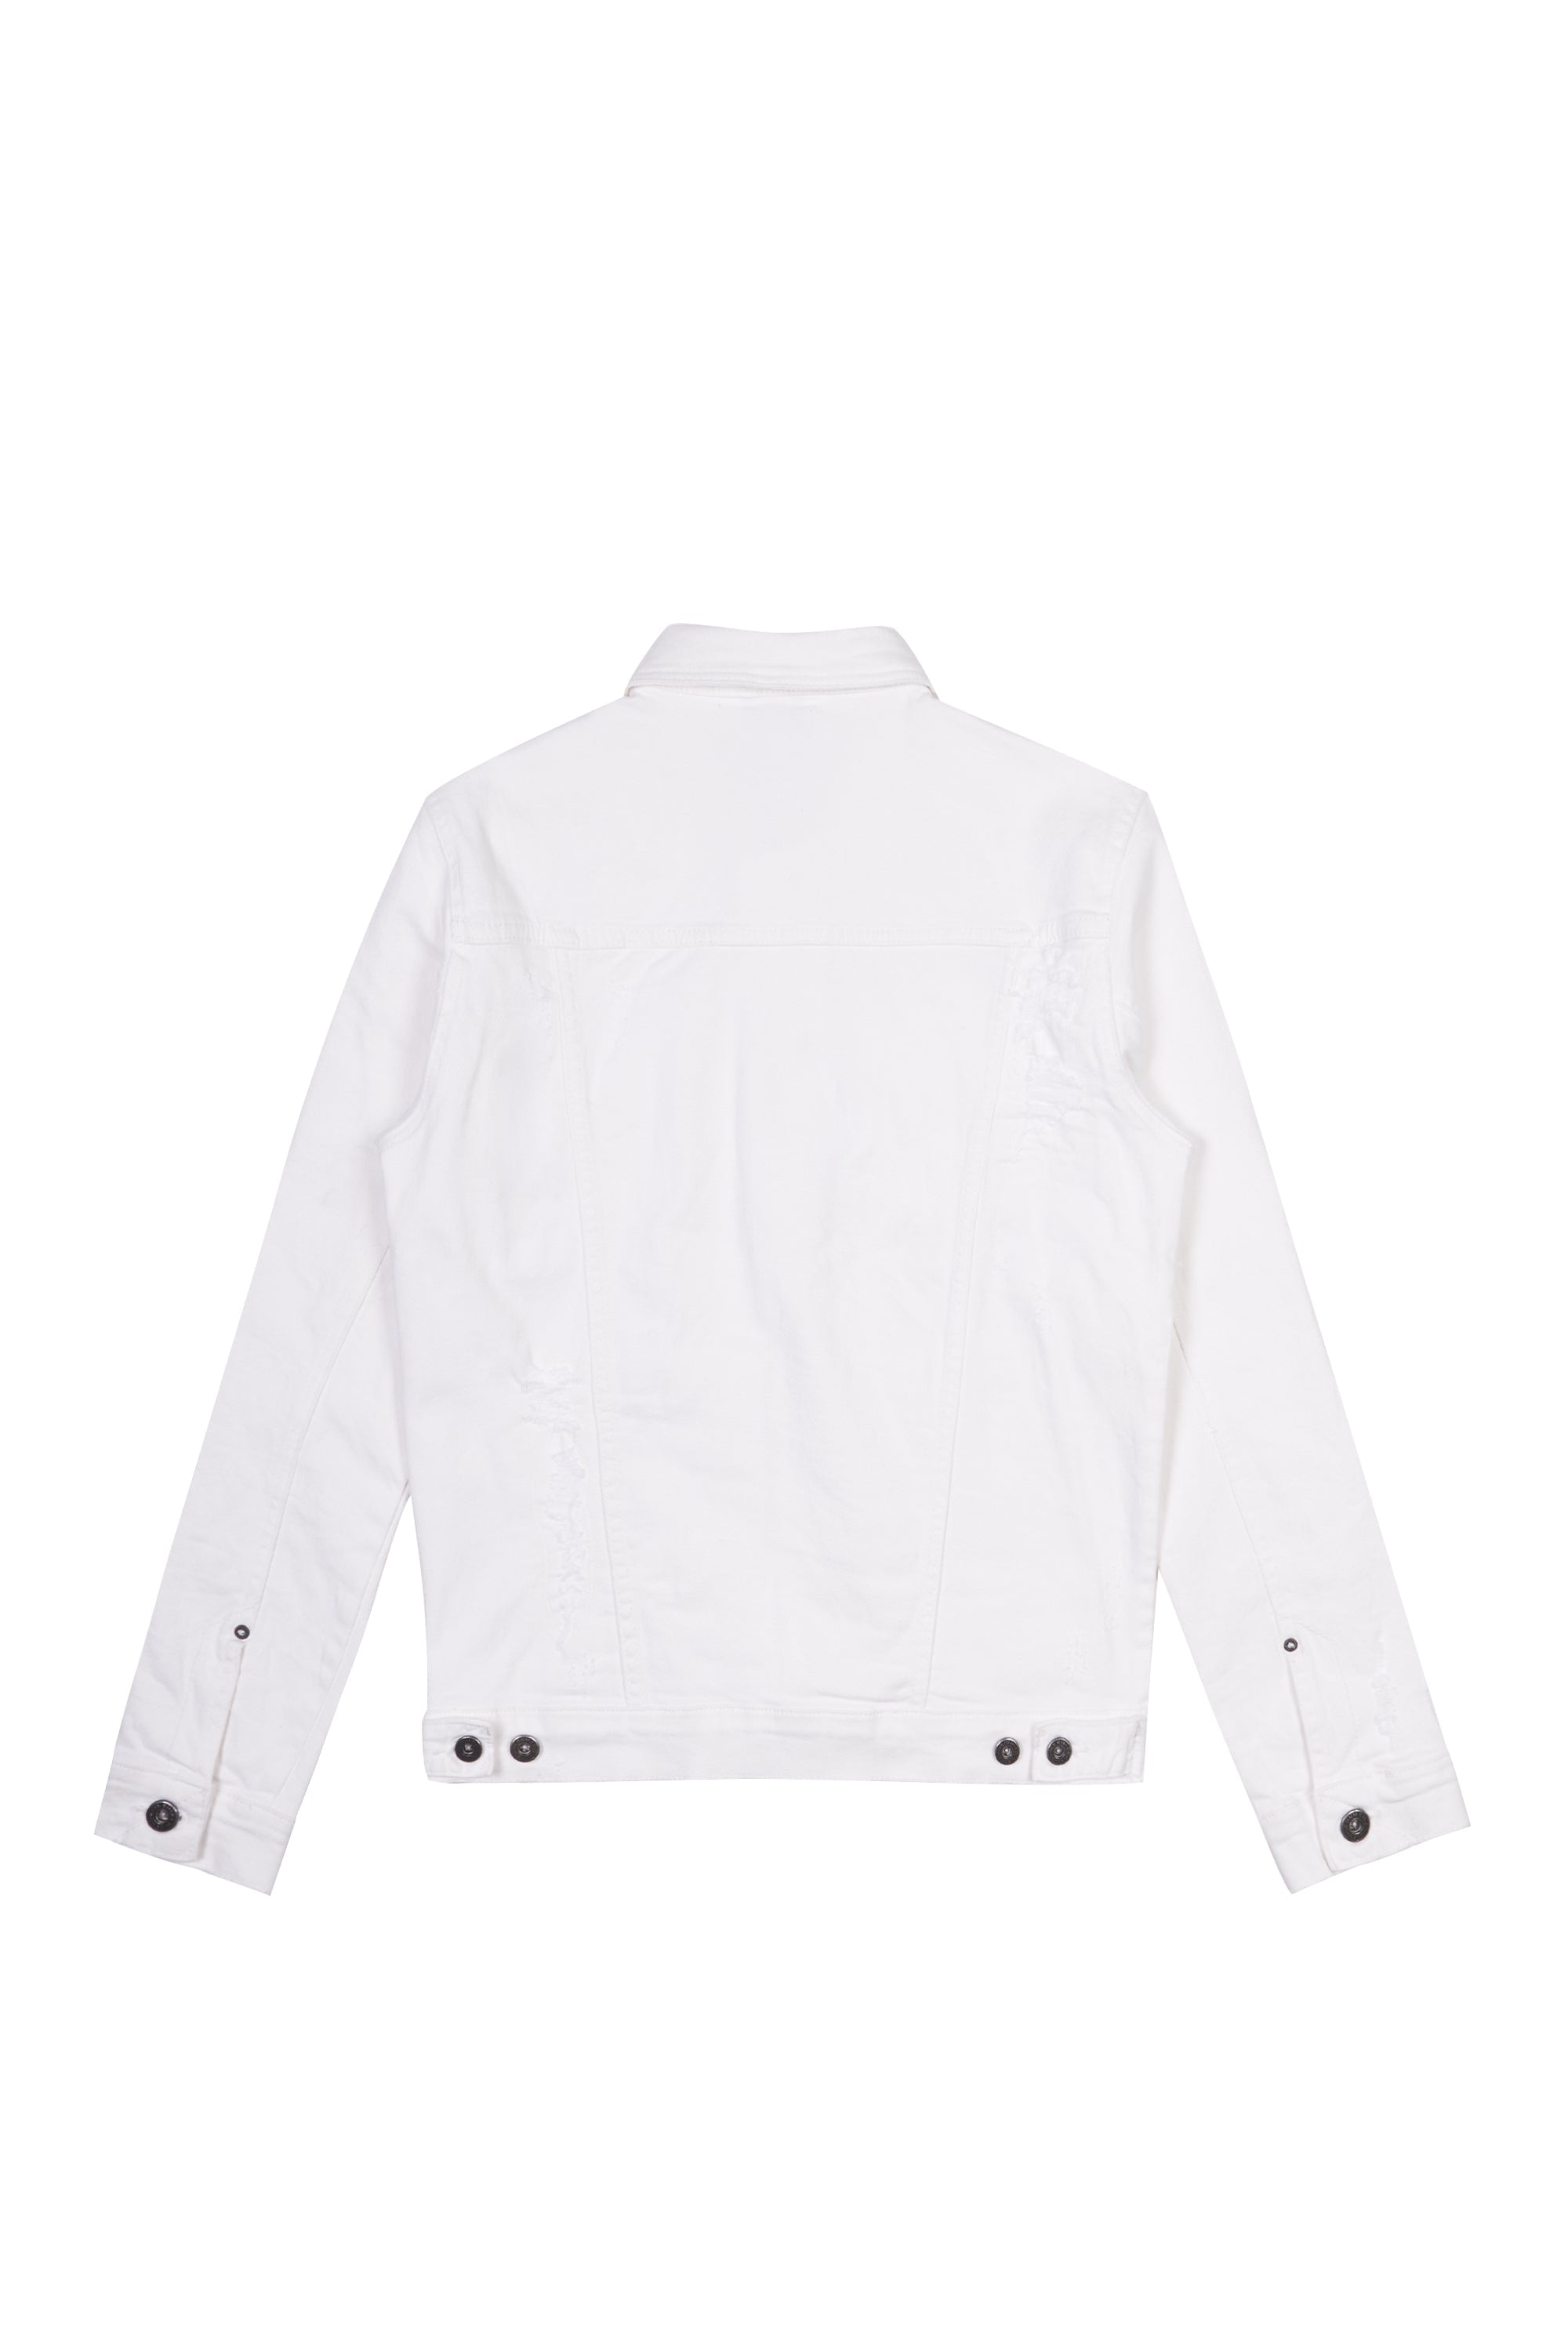 Distressed Rip & Repair Denim Jacket - White